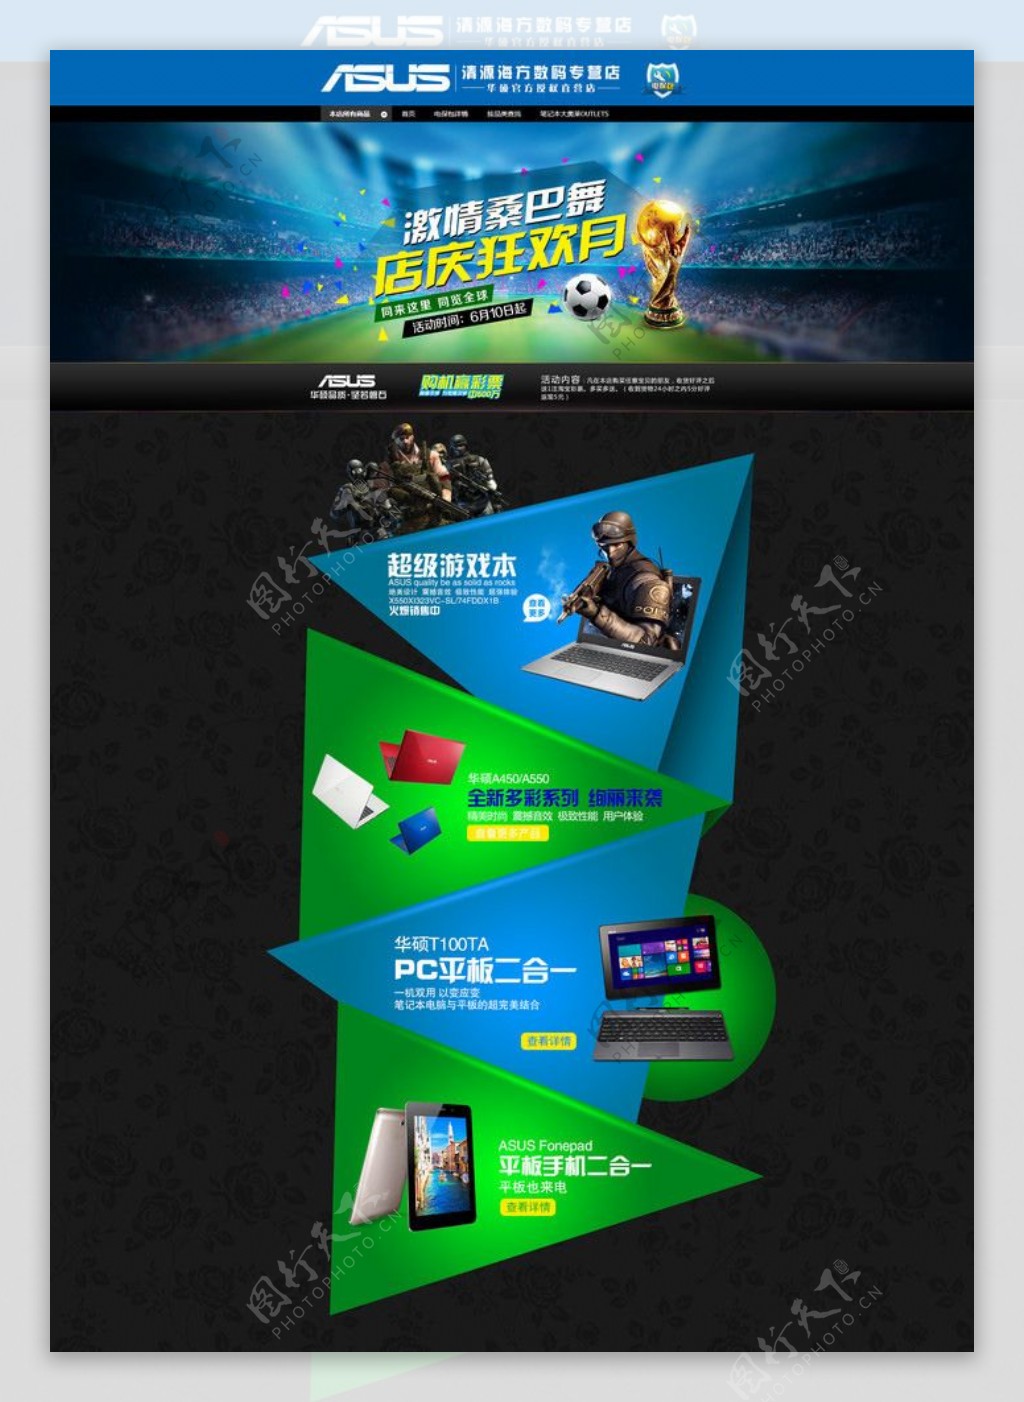 世界杯淘宝天猫店促销页面设计PSD素材